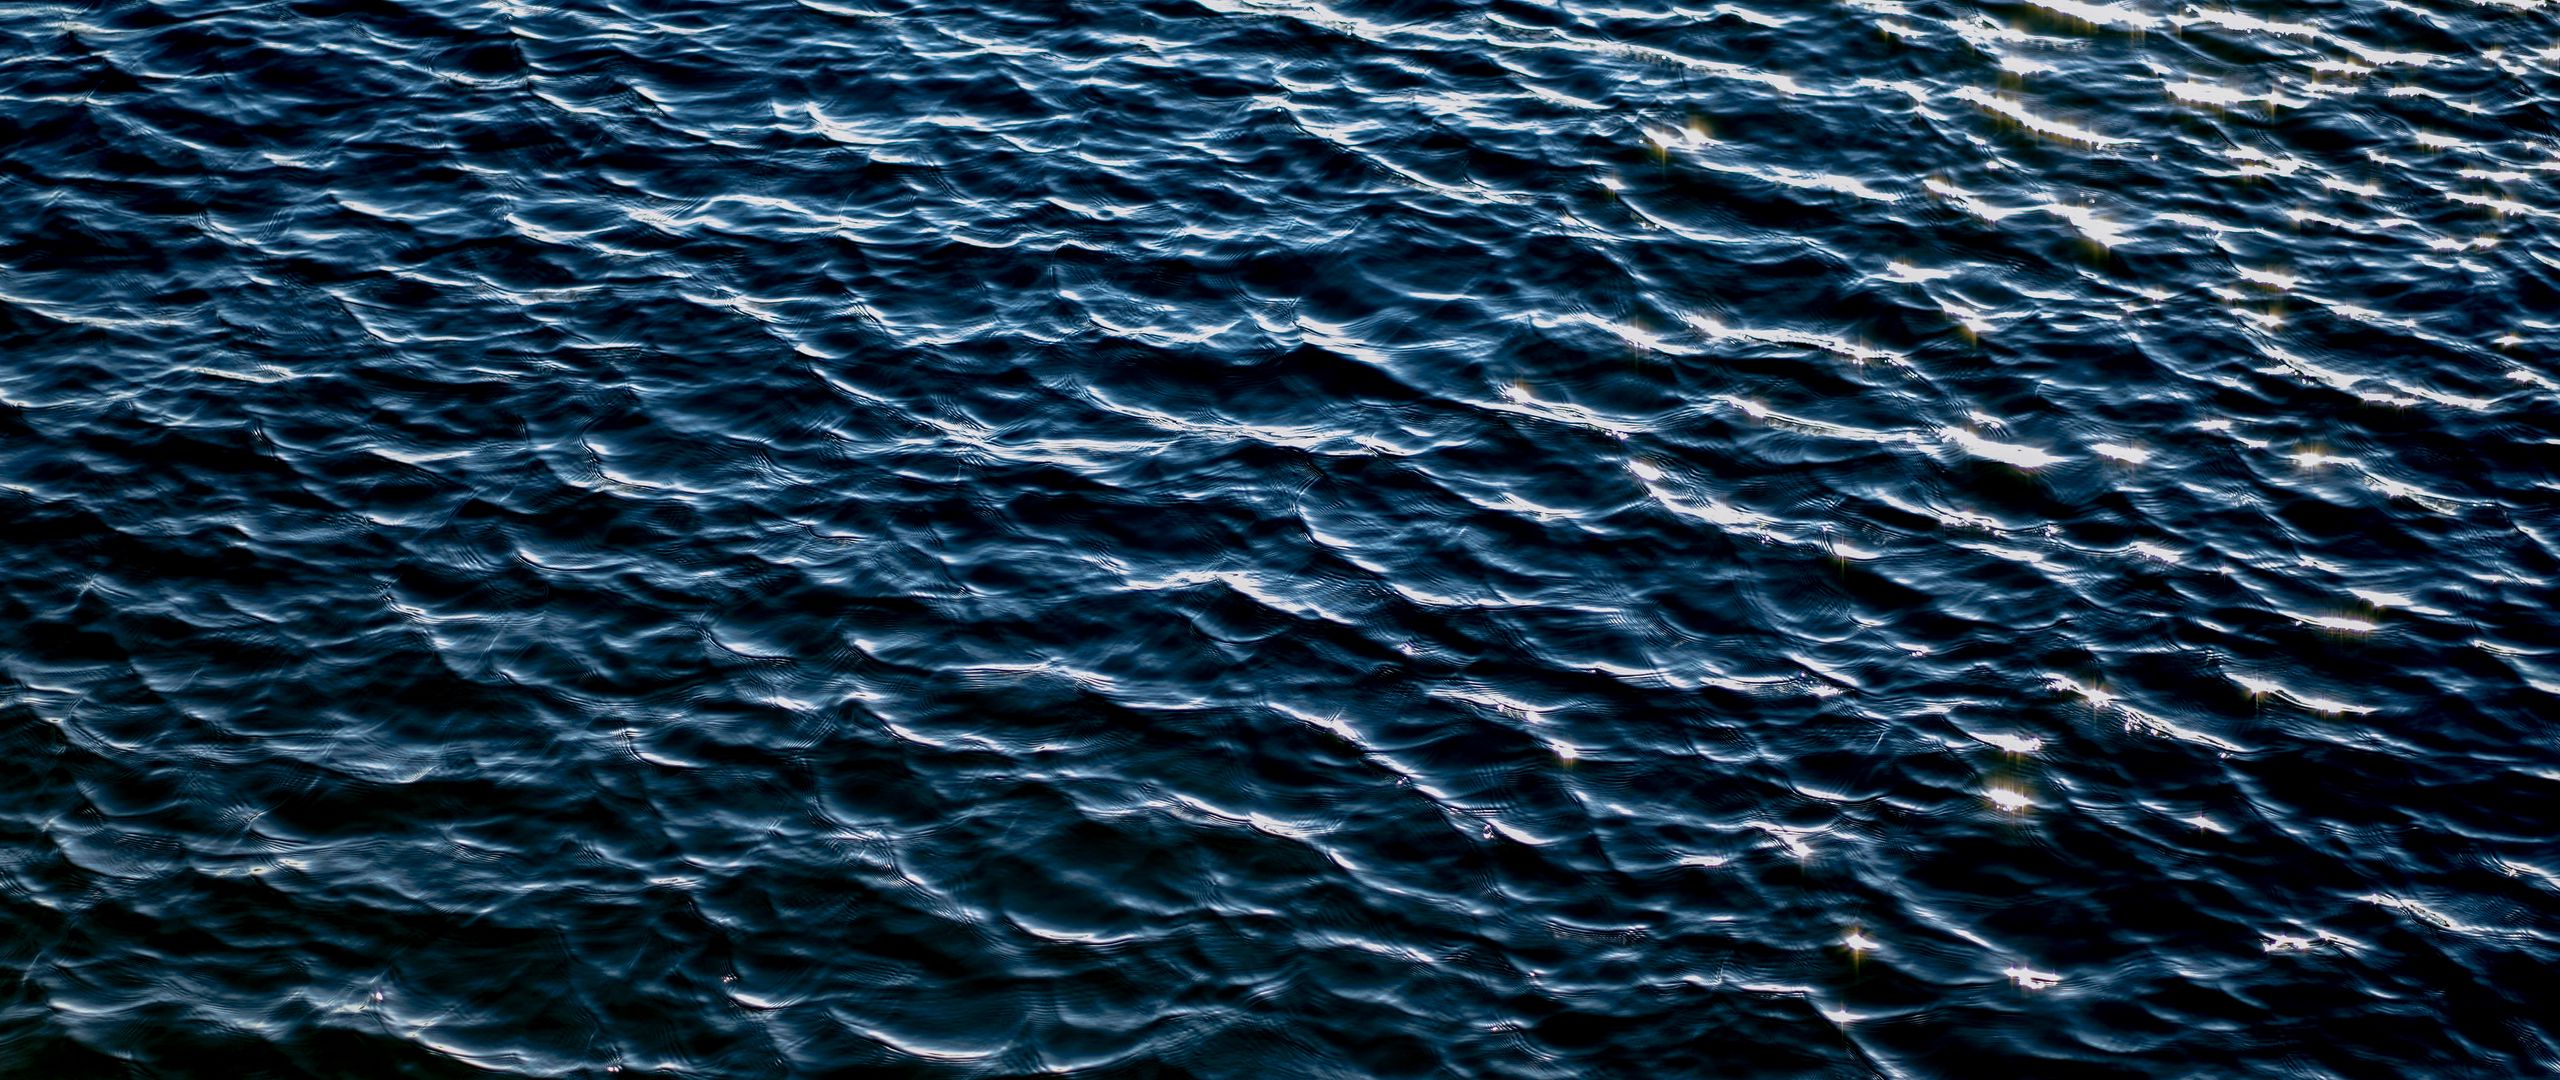 Рябь на воде фото высокого качества